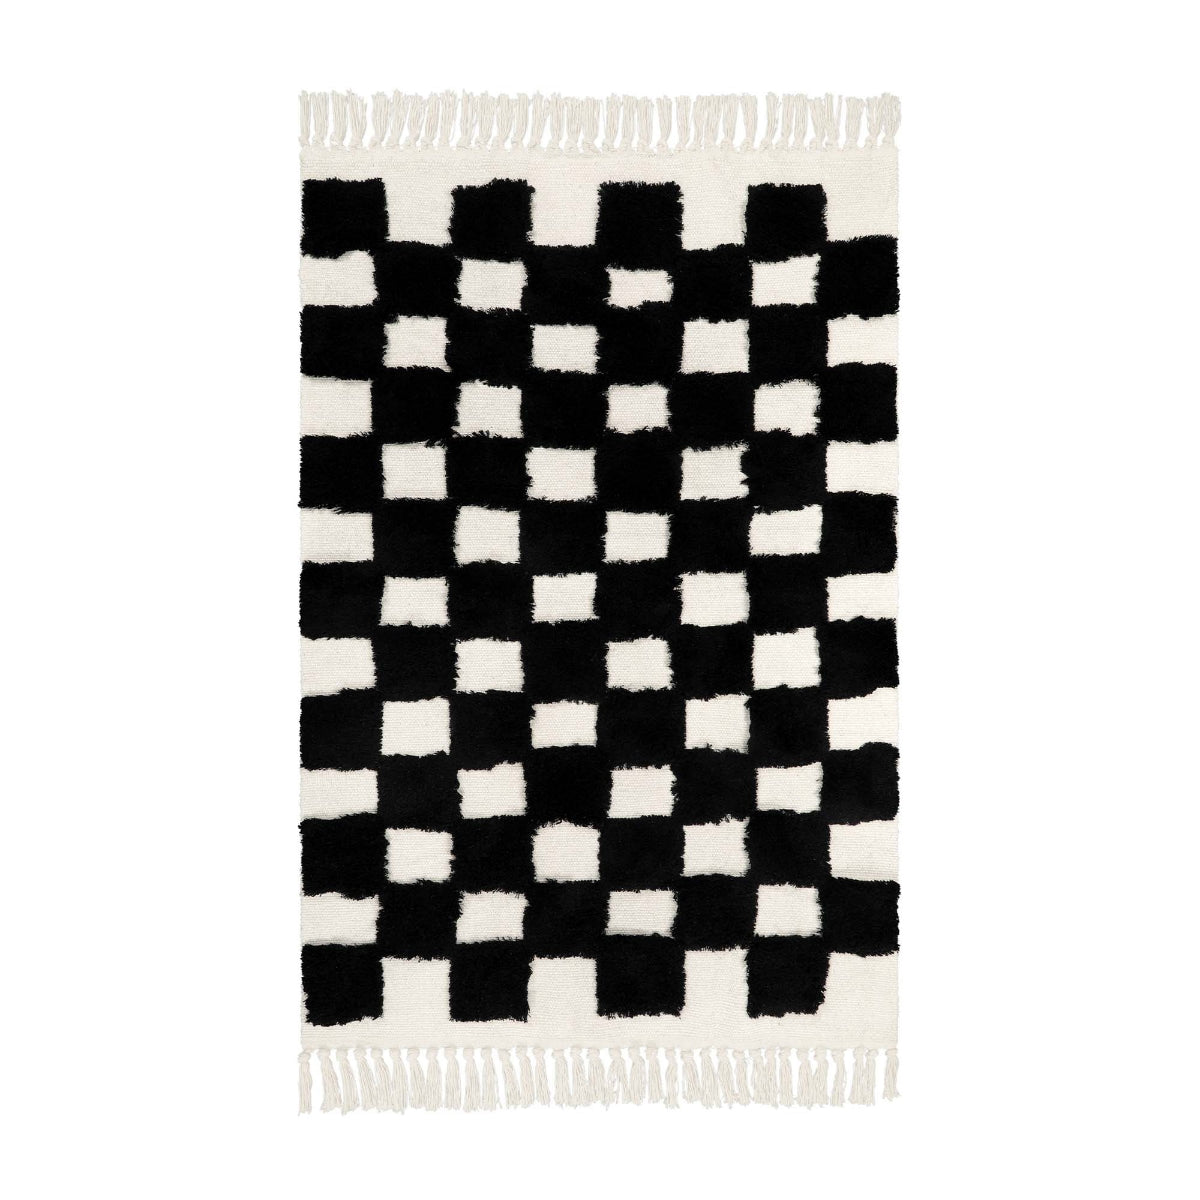 Checkered Area Rug